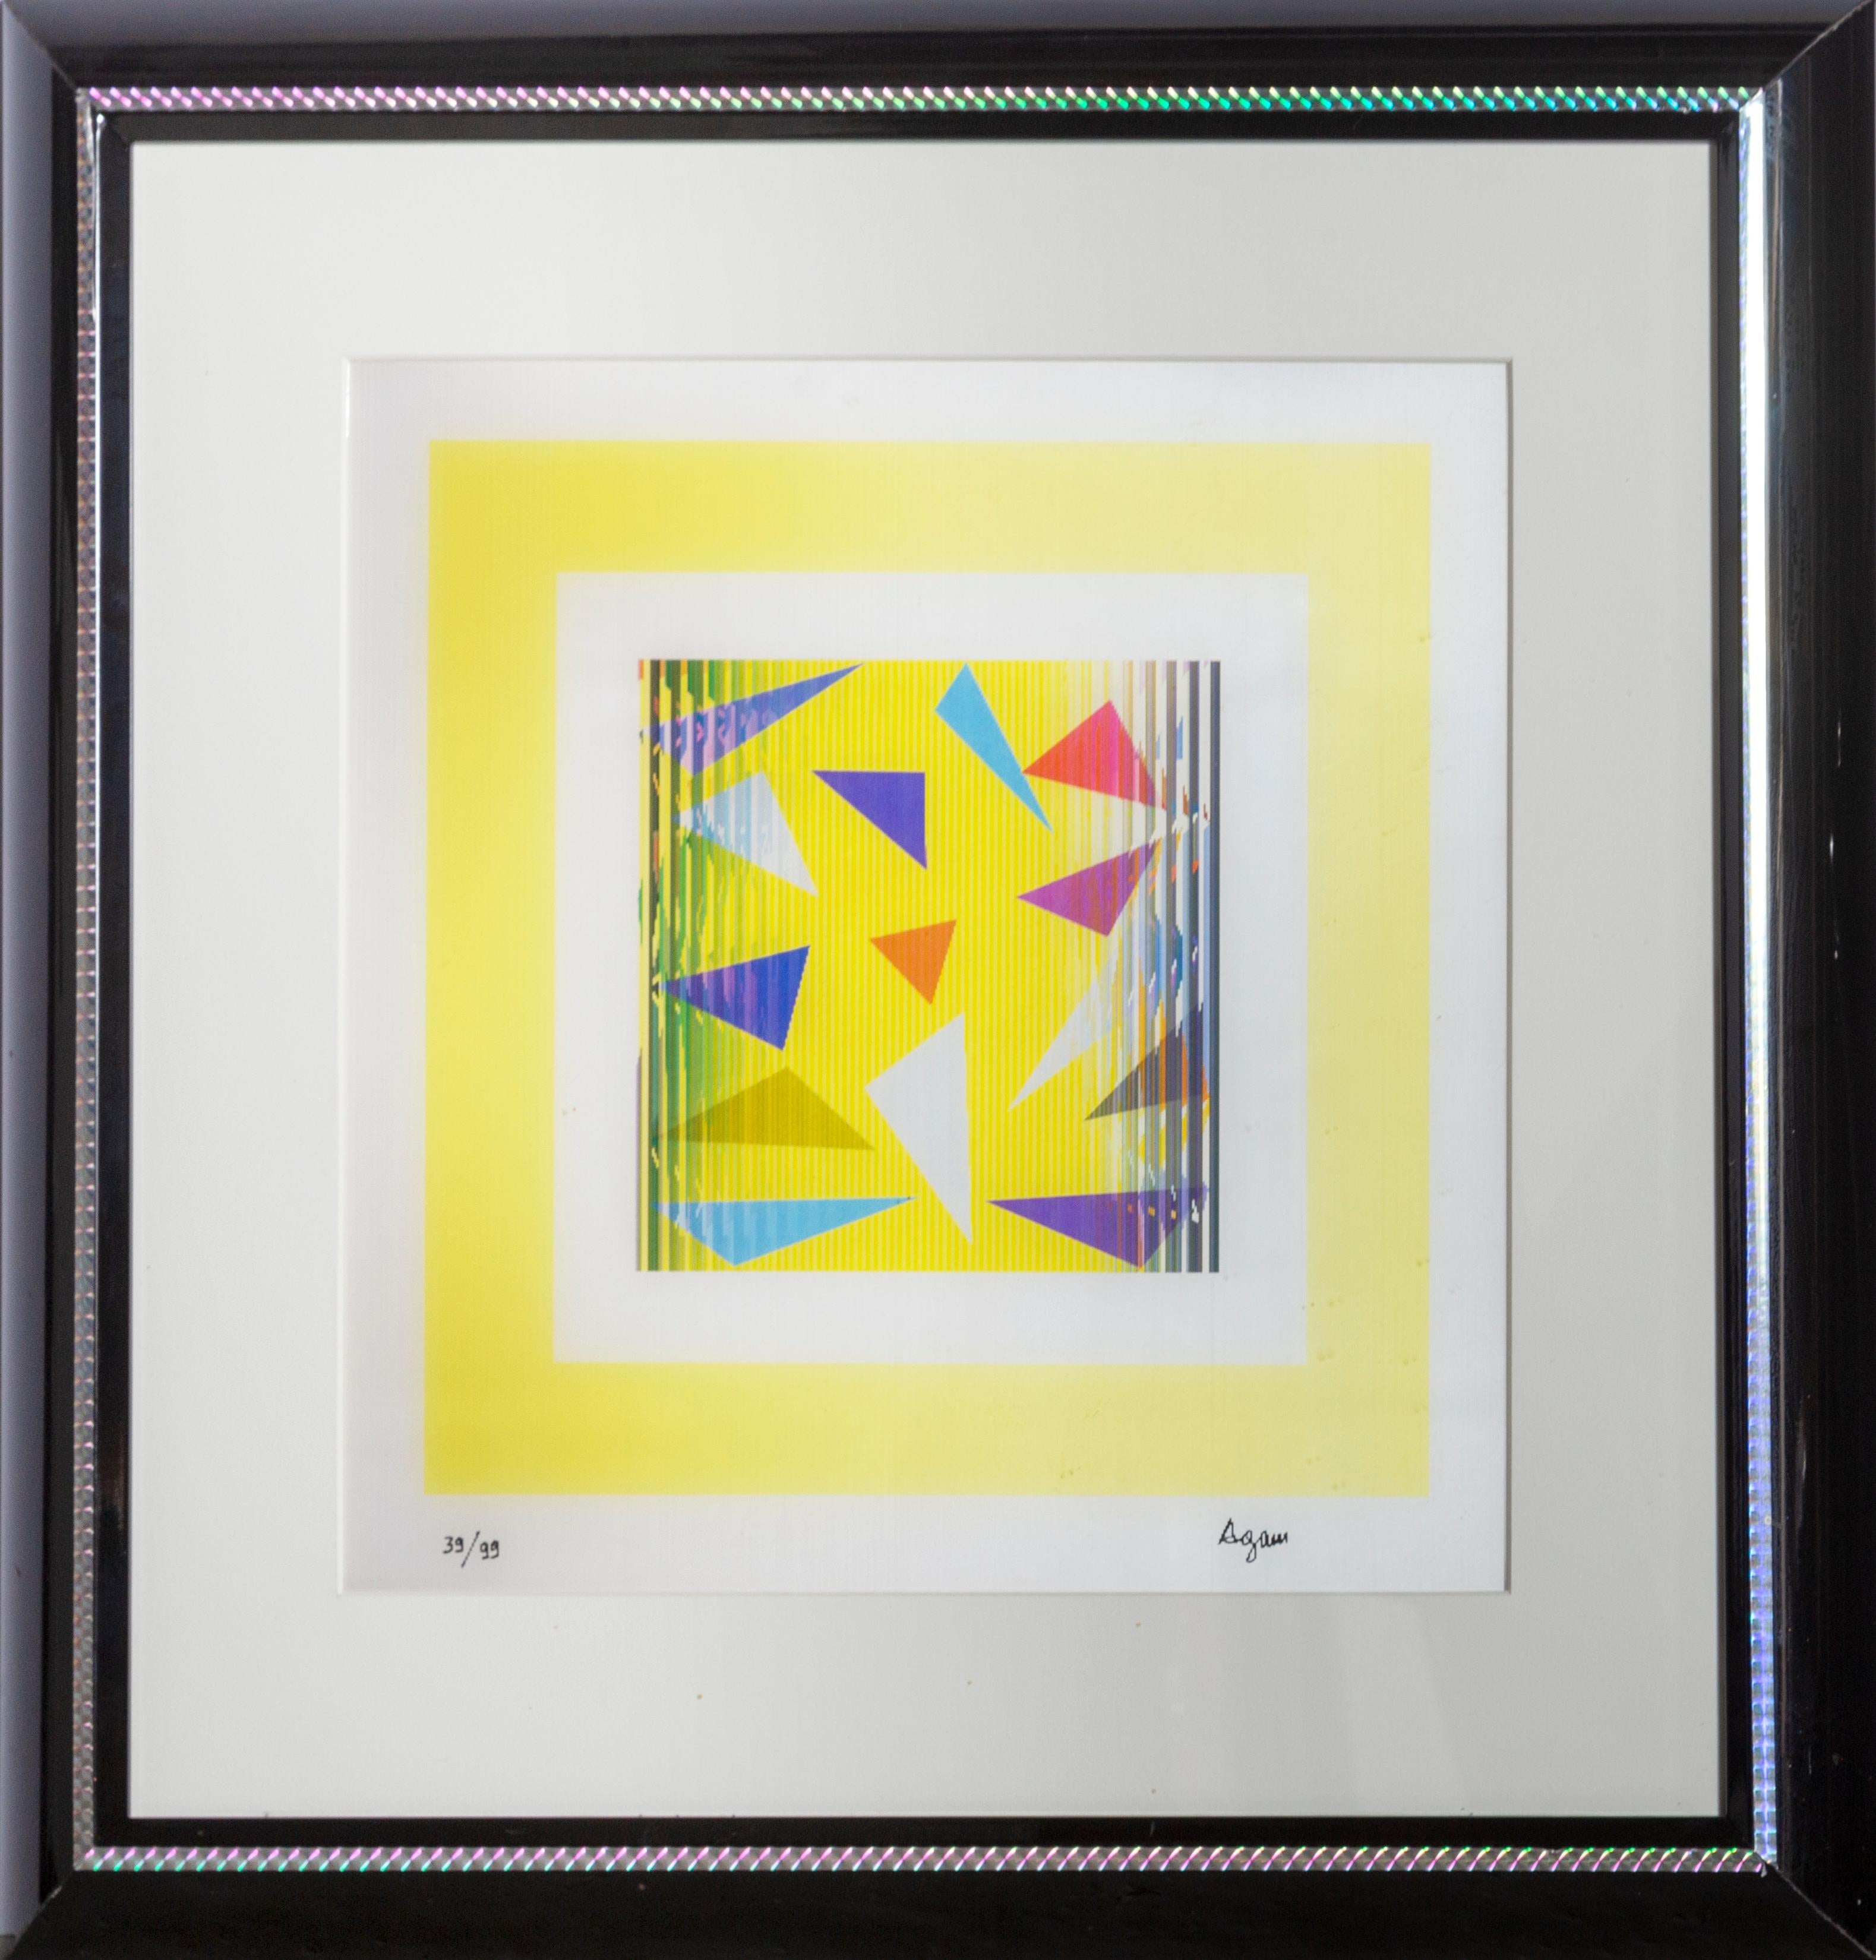 L'Agamograph est la contribution unique de Yaacov Agam au mouvement OP Art.  L'objet est une impression derrière une surface lenticulaire qui trompe l'œil pour montrer le mouvement et la profondeur tridimensionnelle. L'"Abstraction jaune" est signée